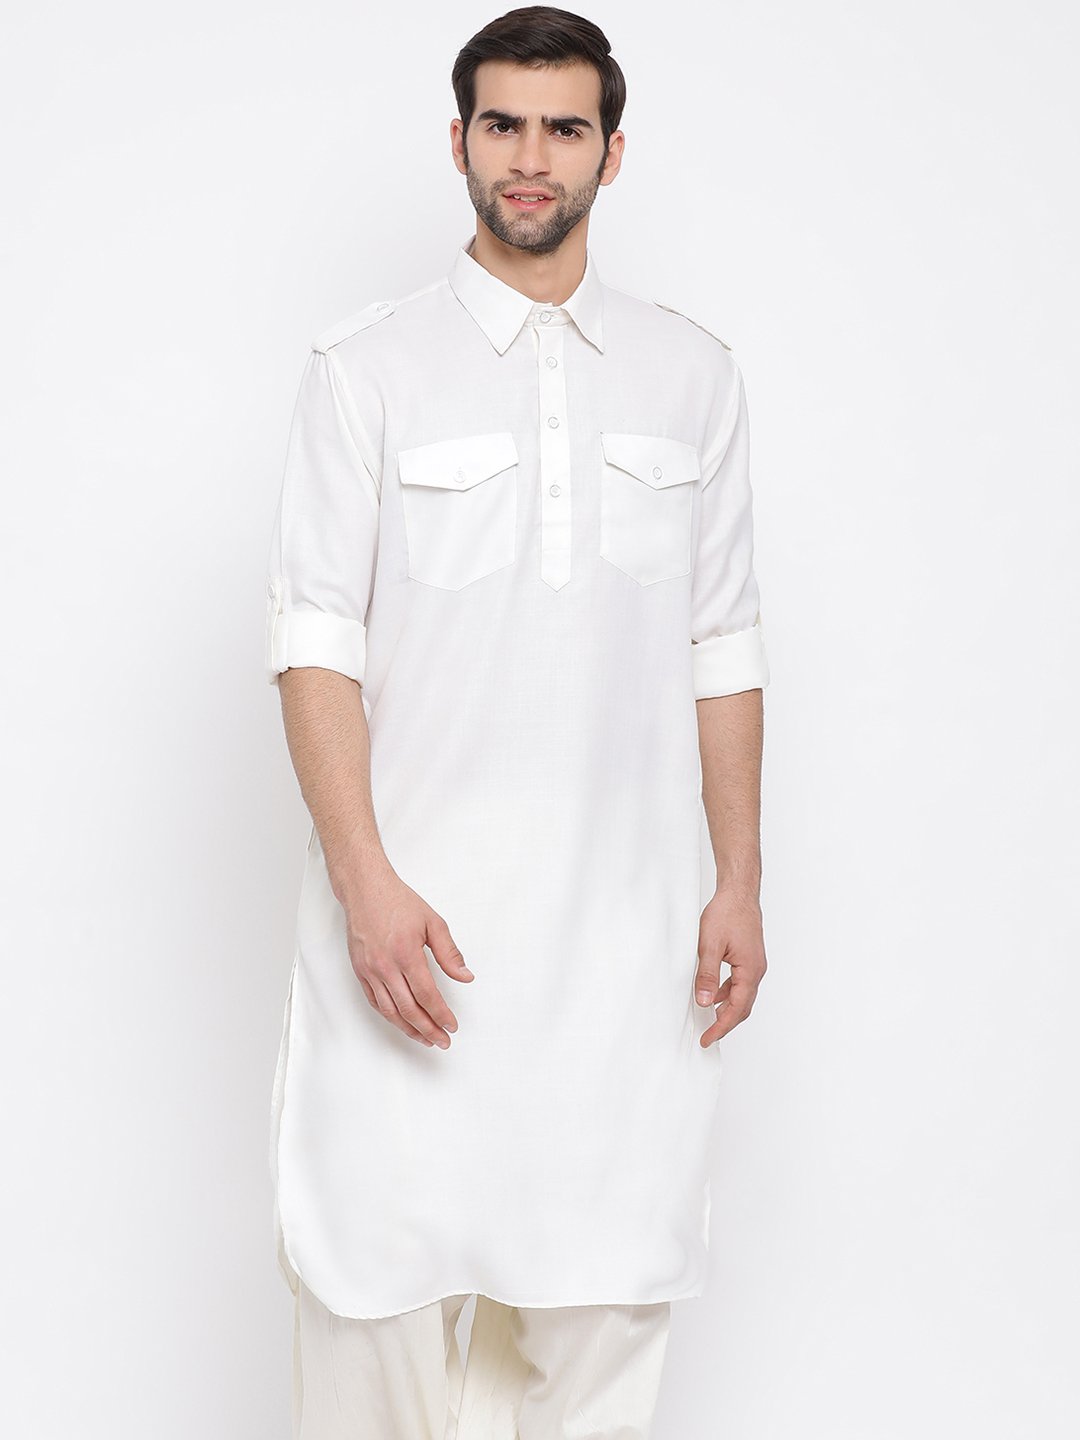 Buy Luxurazi Men's Cotton pathan Suit Kurta Pyjama with Waist Coat  (18-kurtajacketset_White_44-Regular) at Amazon.in